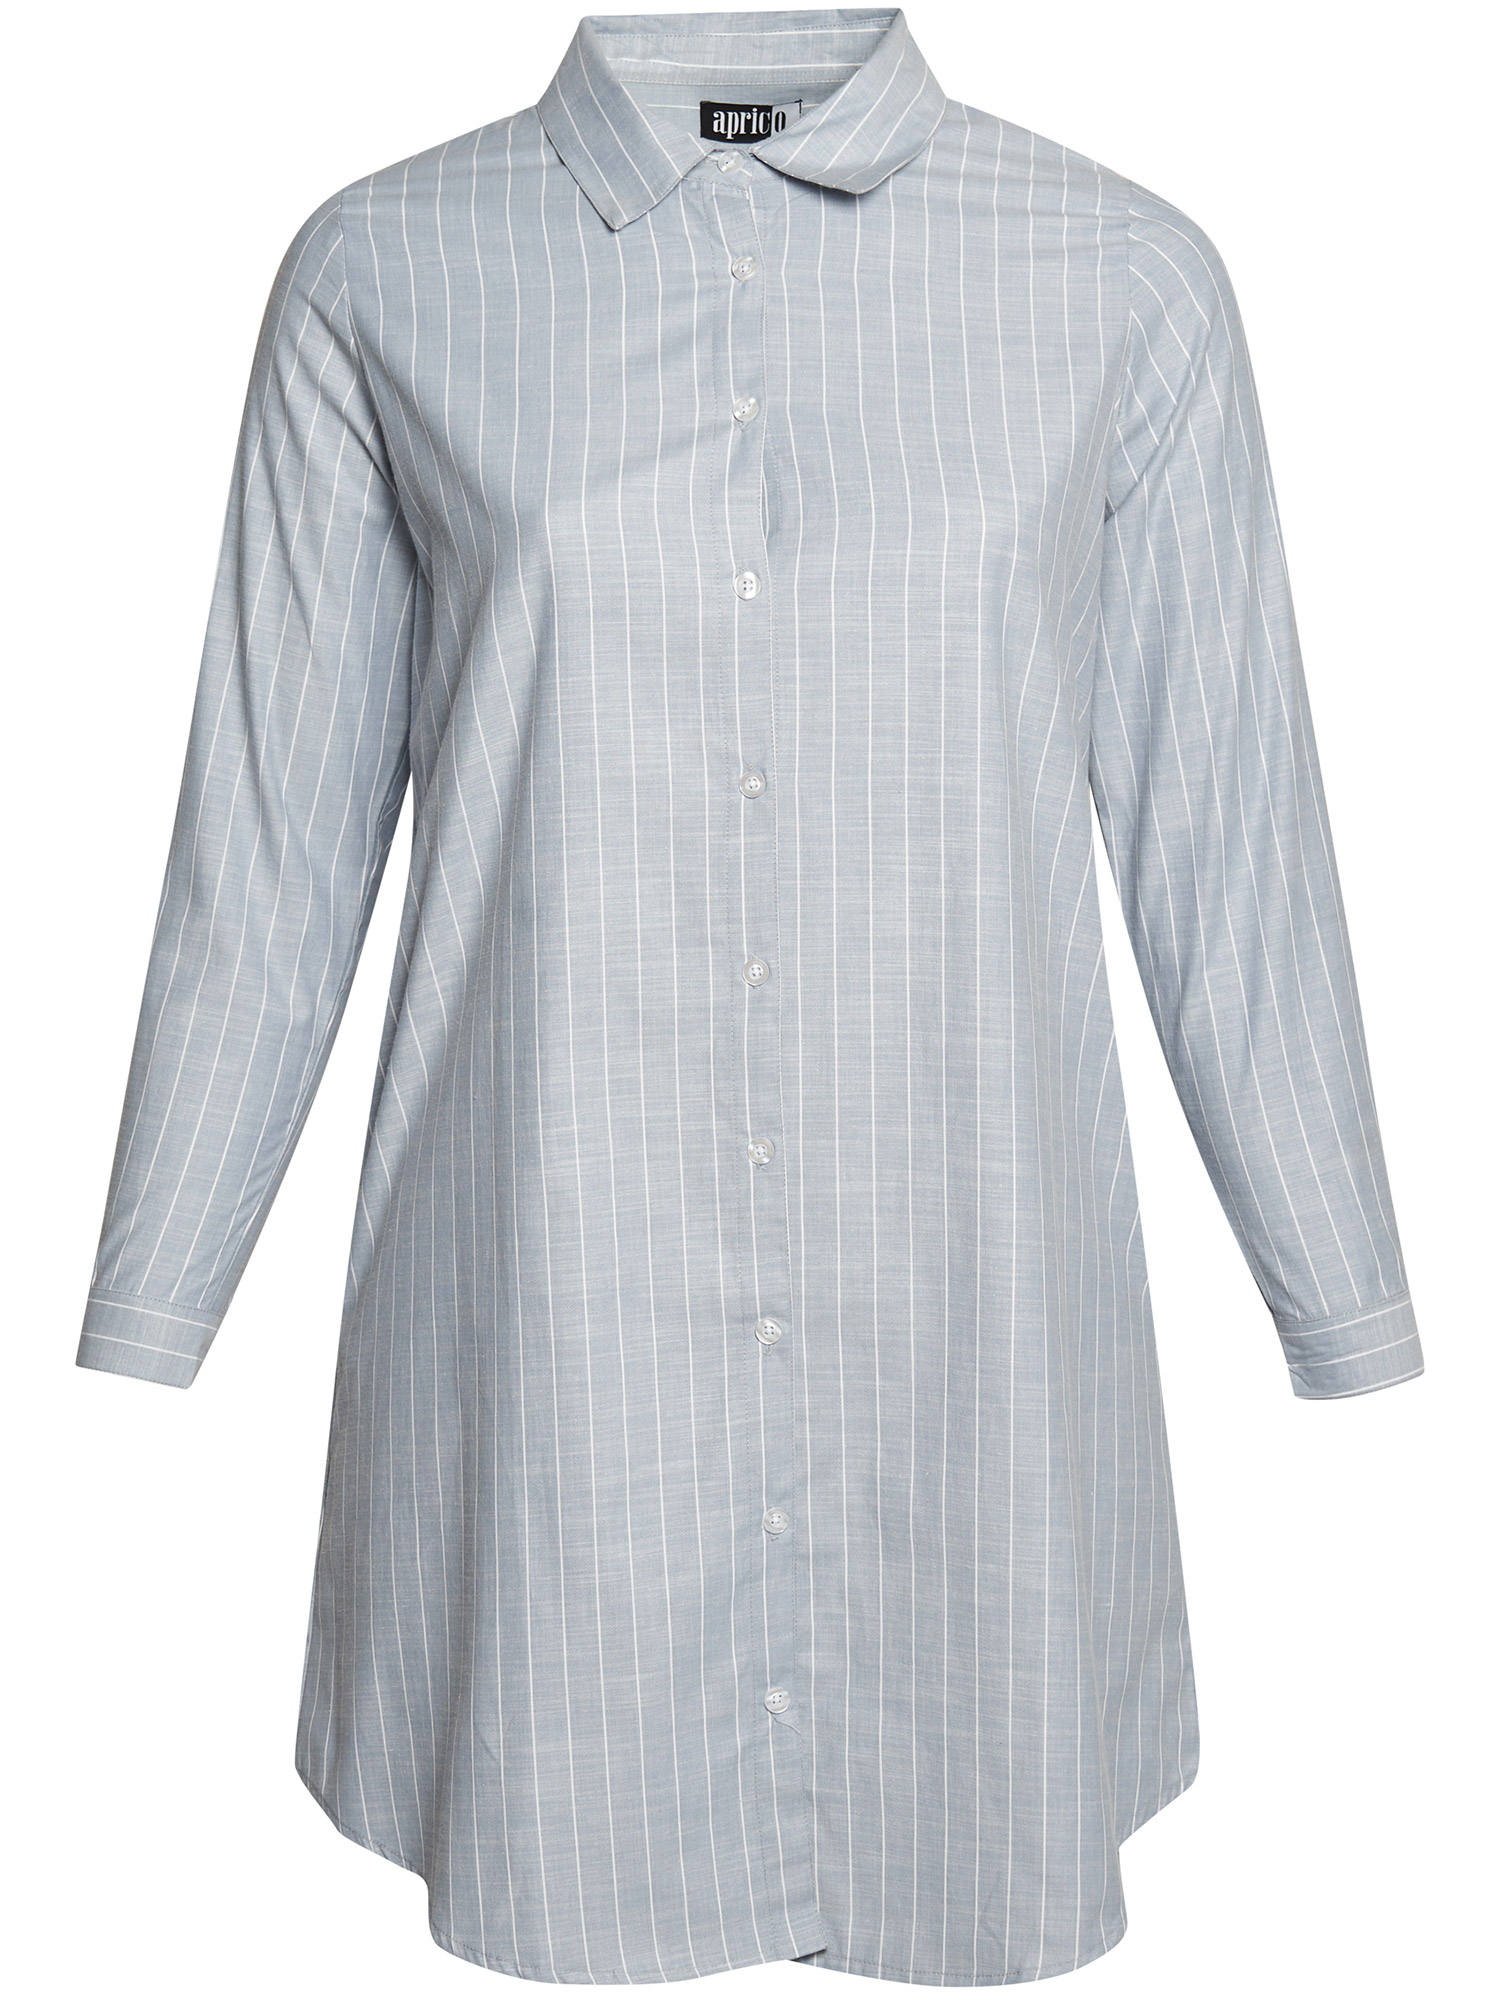 Norwalk - Ljusblå skjorta med vita ränder fra Aprico